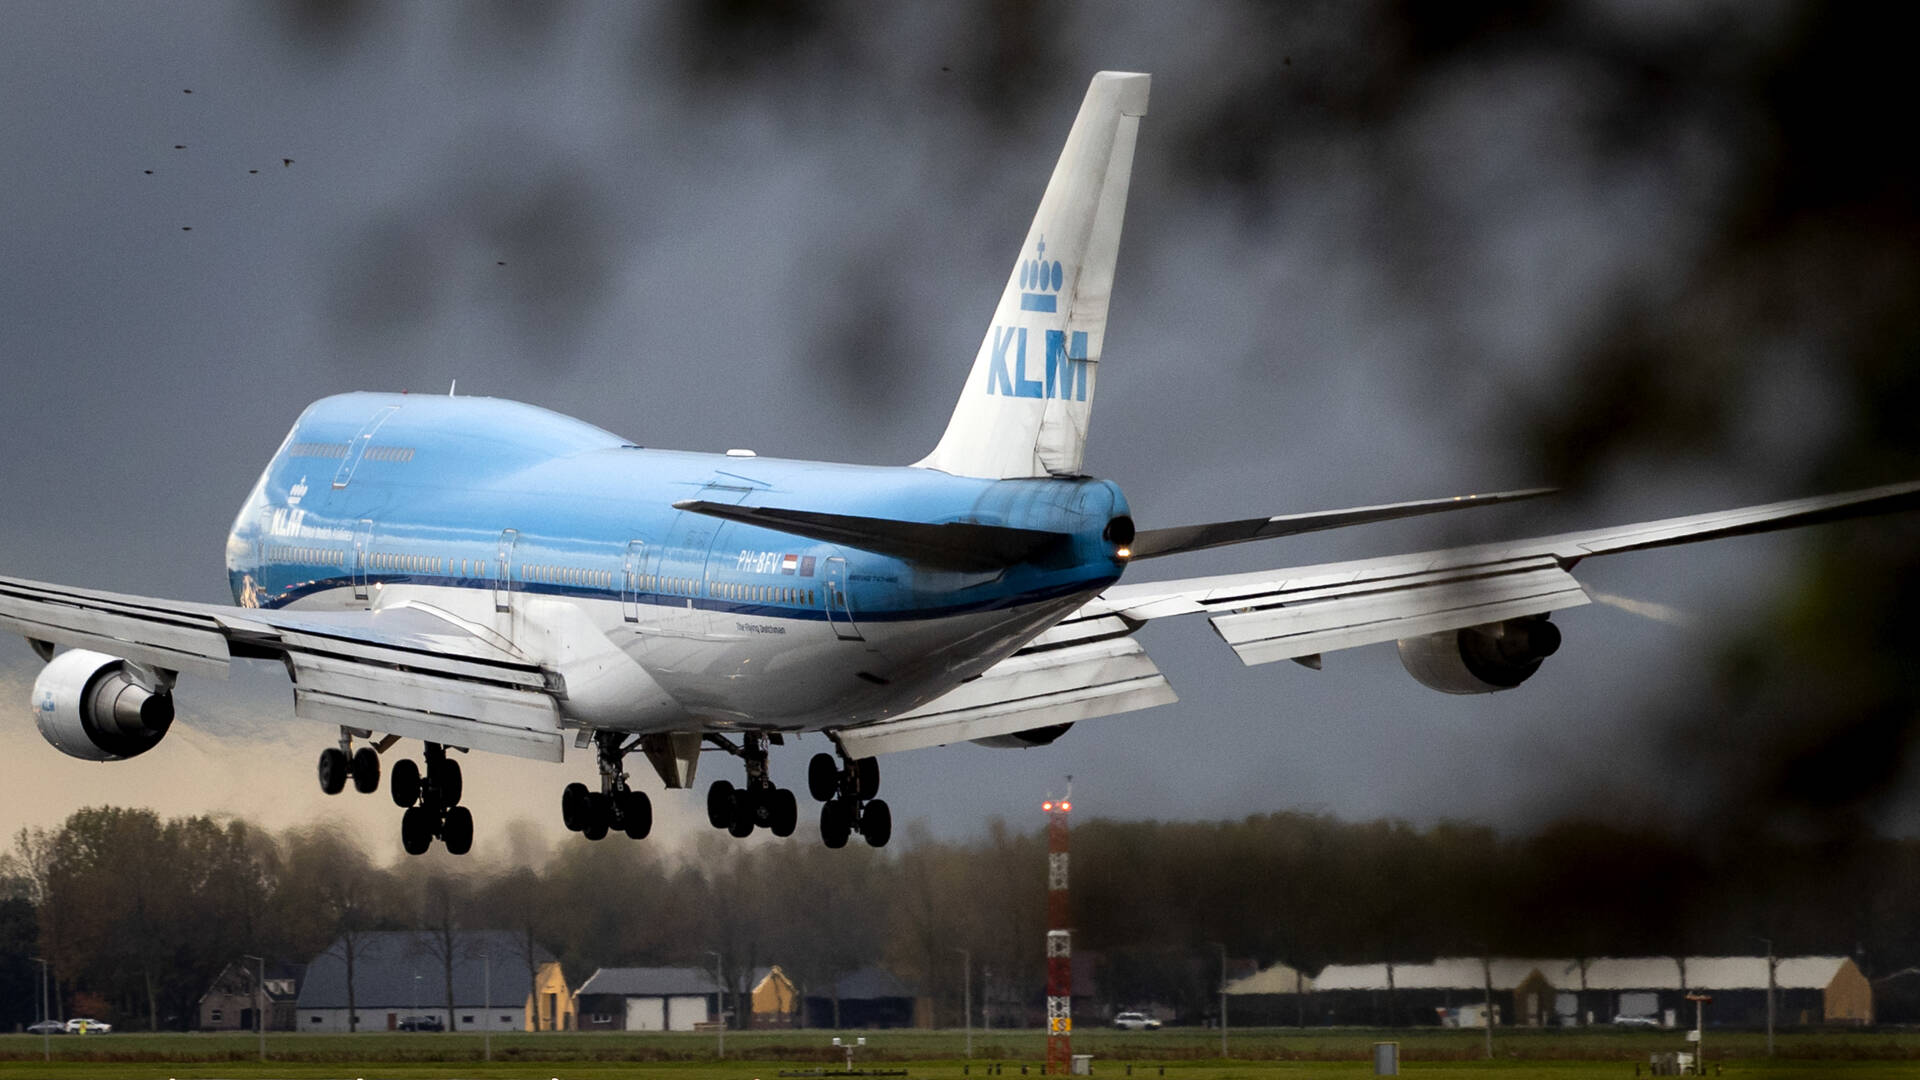 مجلس الوزراء يرفض الآن مساعدة الدولة لشركة KLM